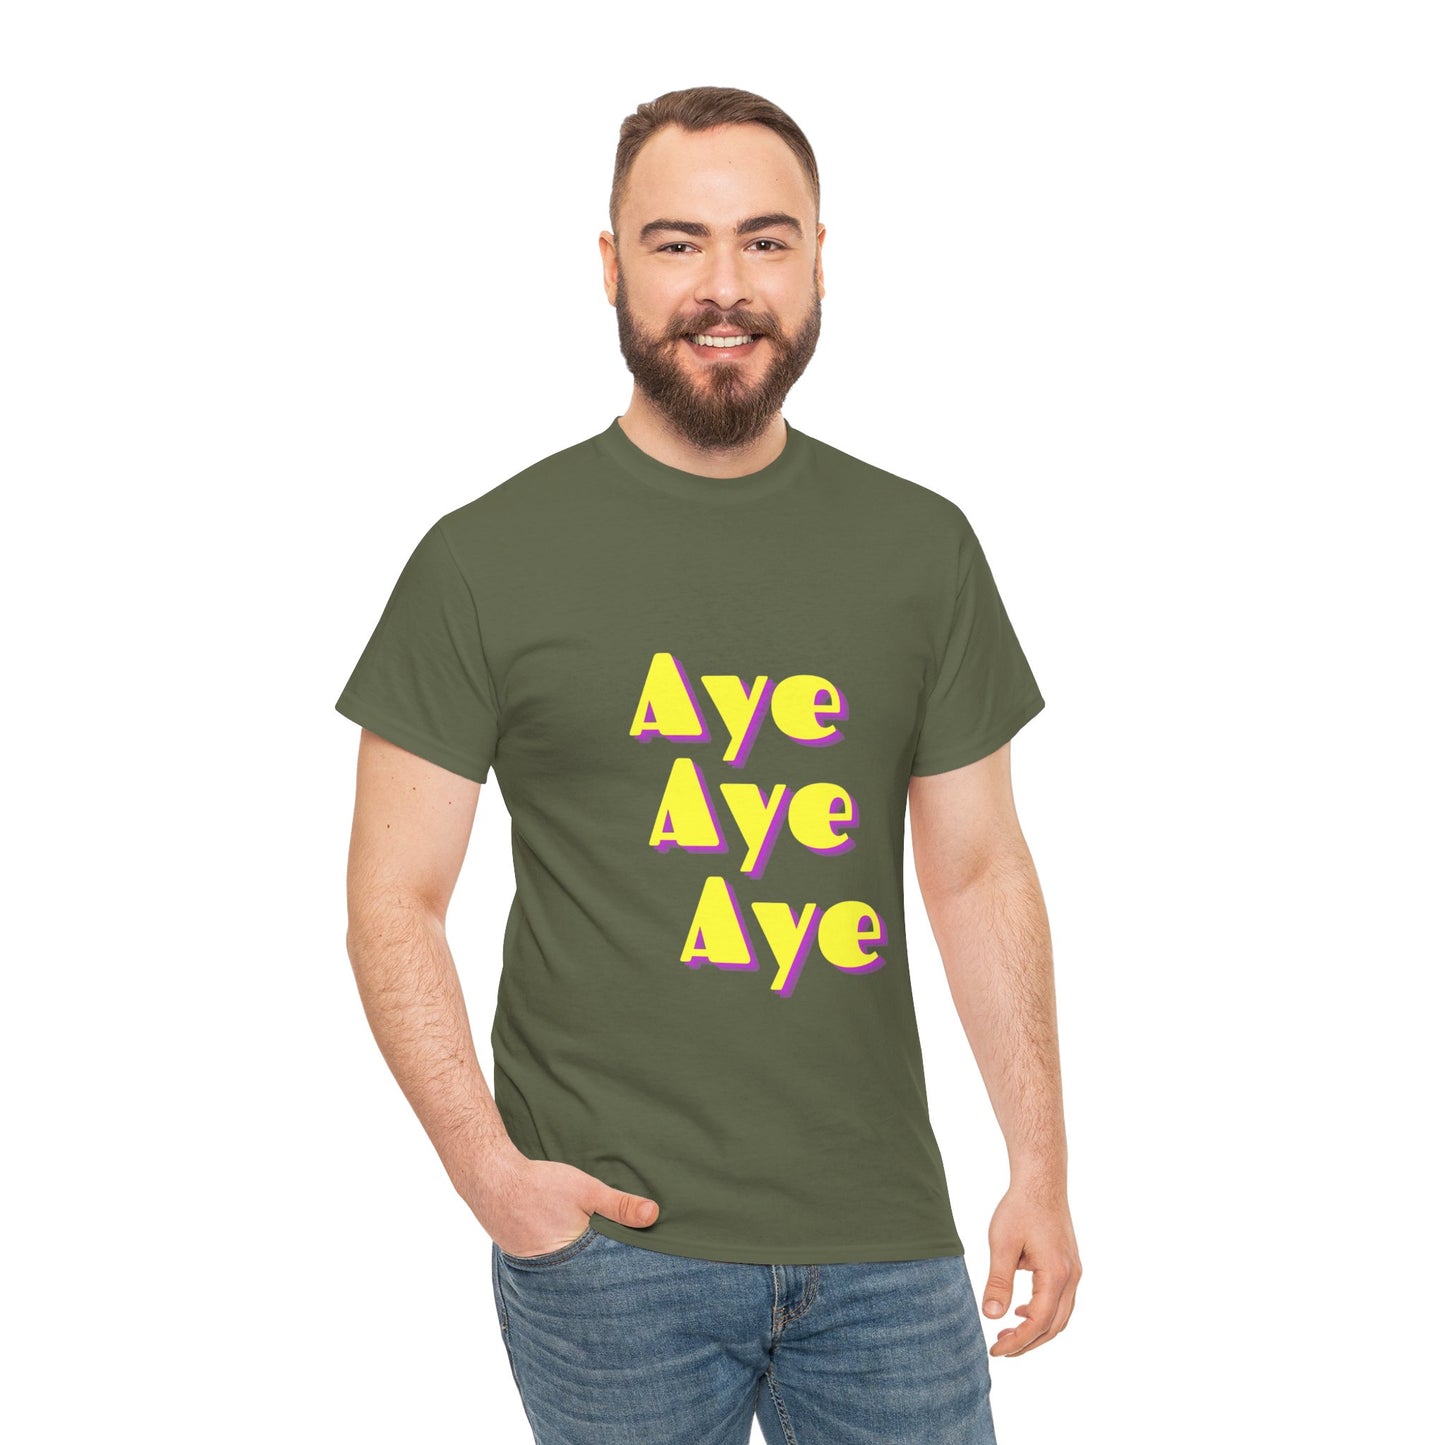 AYE! - Heavy COTTON T-SHIRT, Men or Women